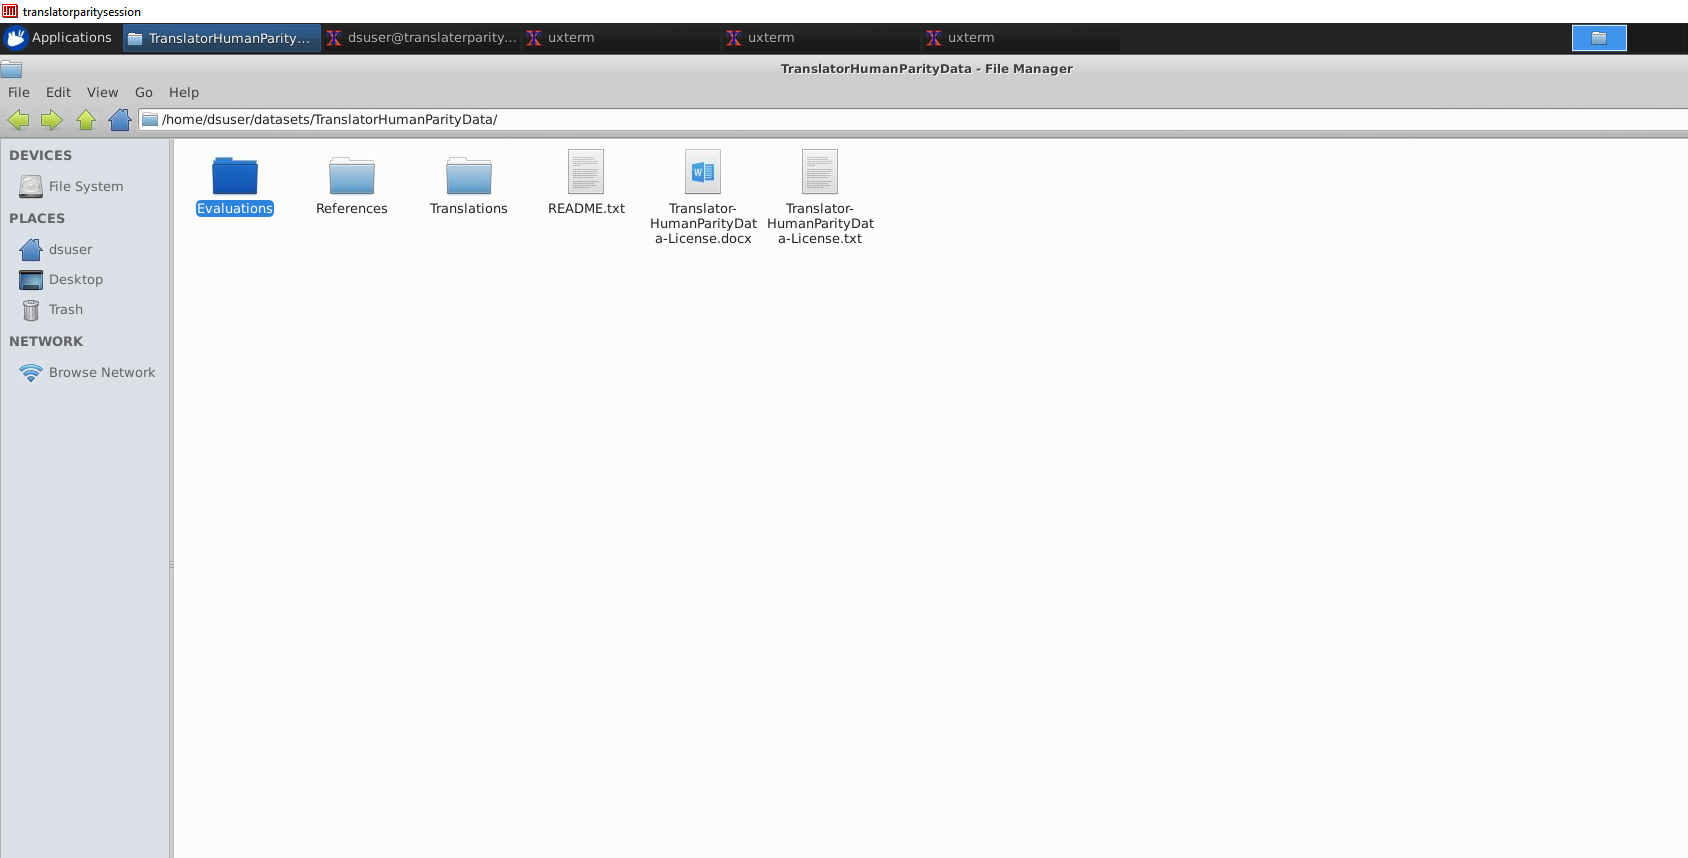 Снимок экрана данные, скопированные с microsoftopendata.com на виртуальную машину Linux в Azure.